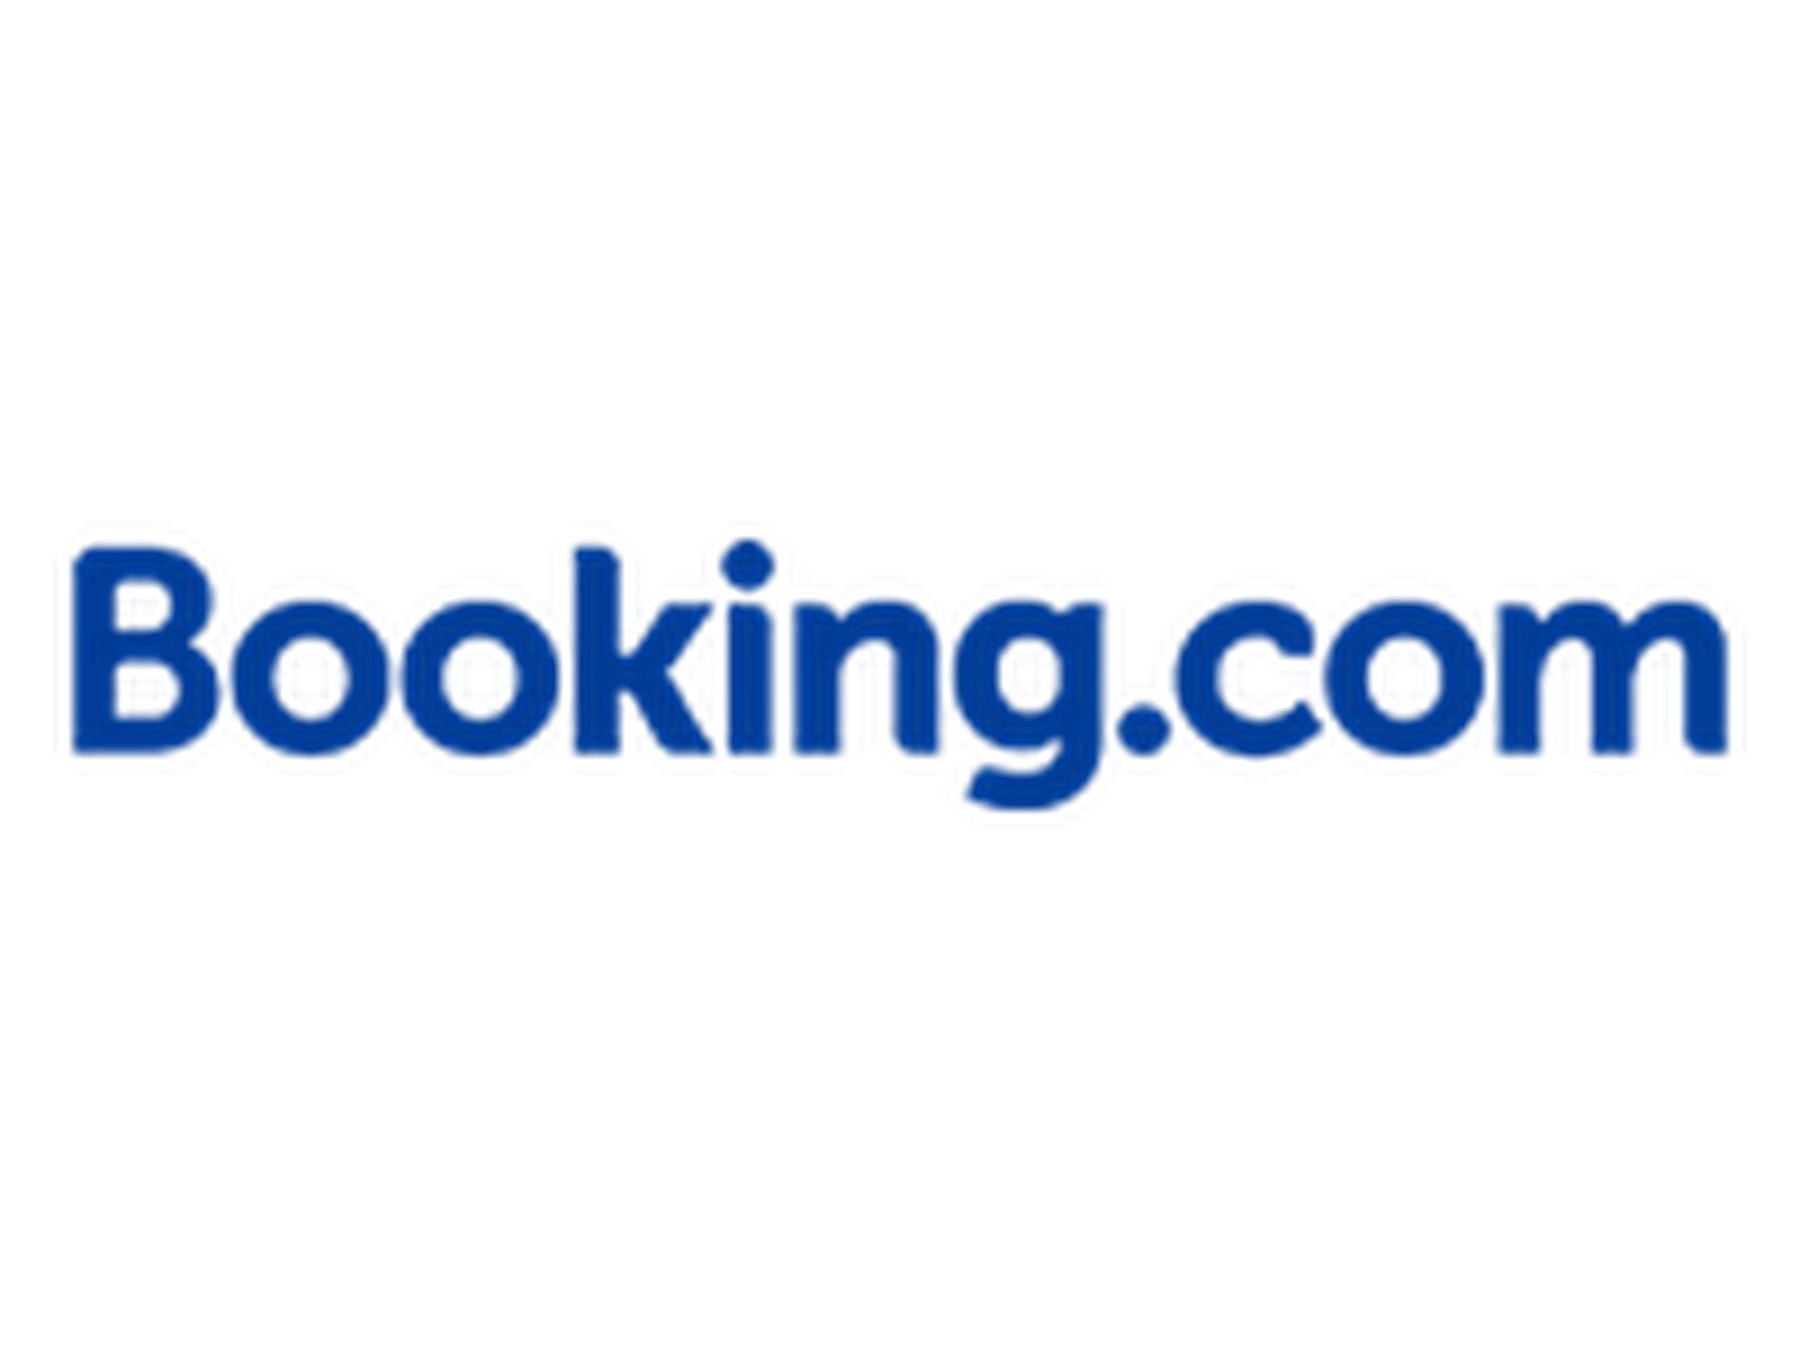 Booking.com promo code